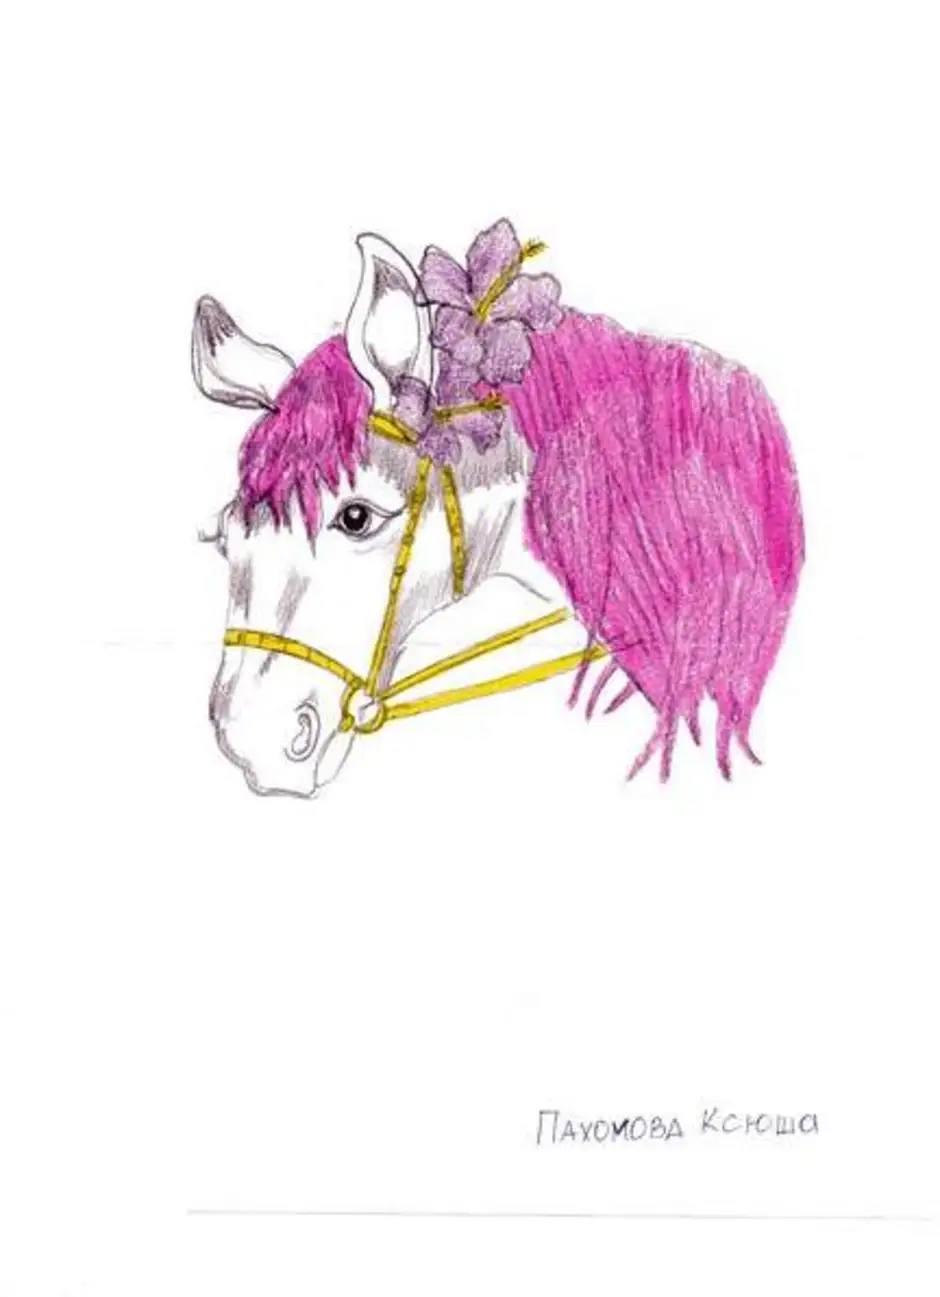 Год создания коня с розовой гривой. Конь с розовой гривой иллюстрации. Конь с розовой гривой рисунок. Лошадь с розовой гривой рисунок. Конь с розовой гривой рисунок коня.